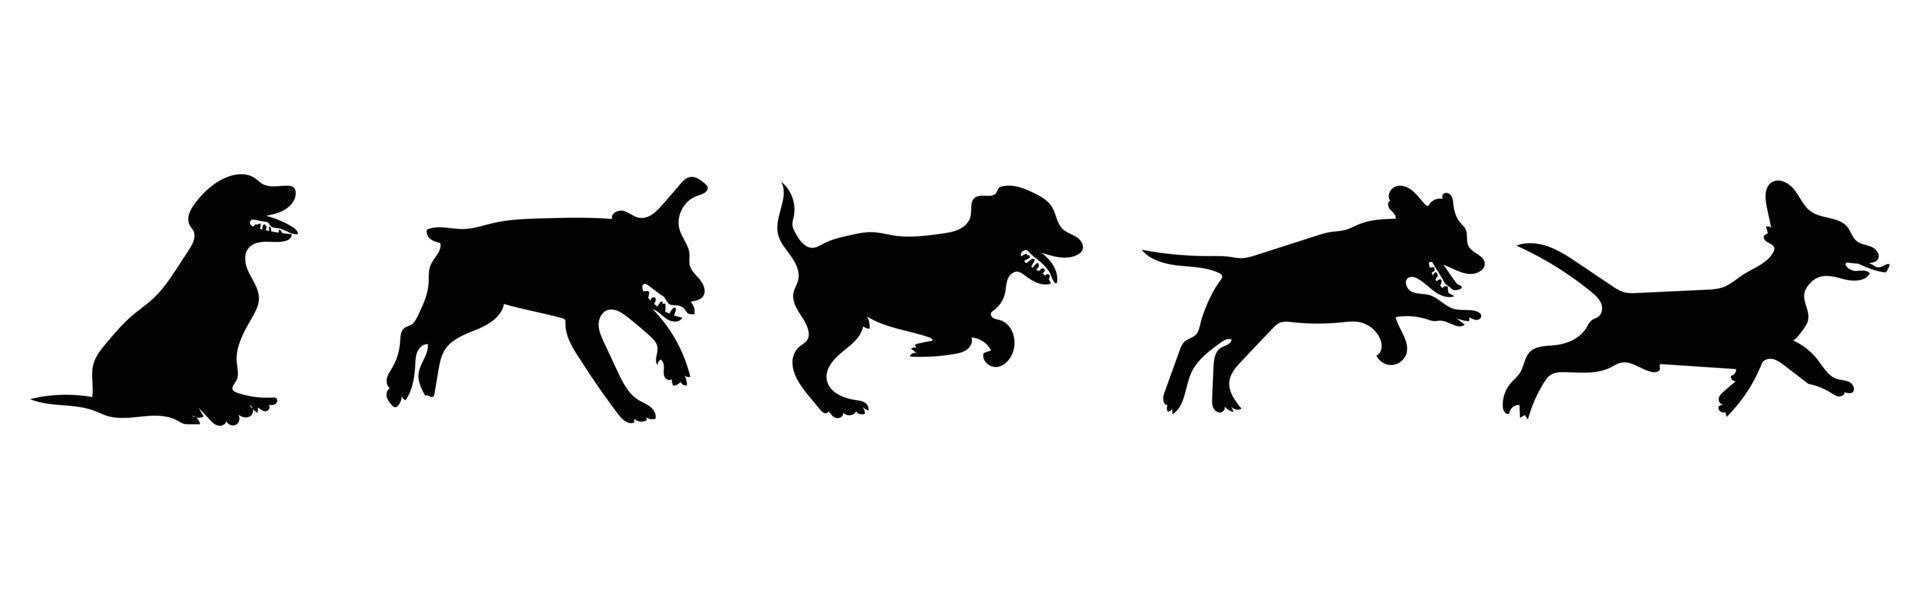 Vektorsilhouette eines Hundes auf weißem Hintergrund. vektor